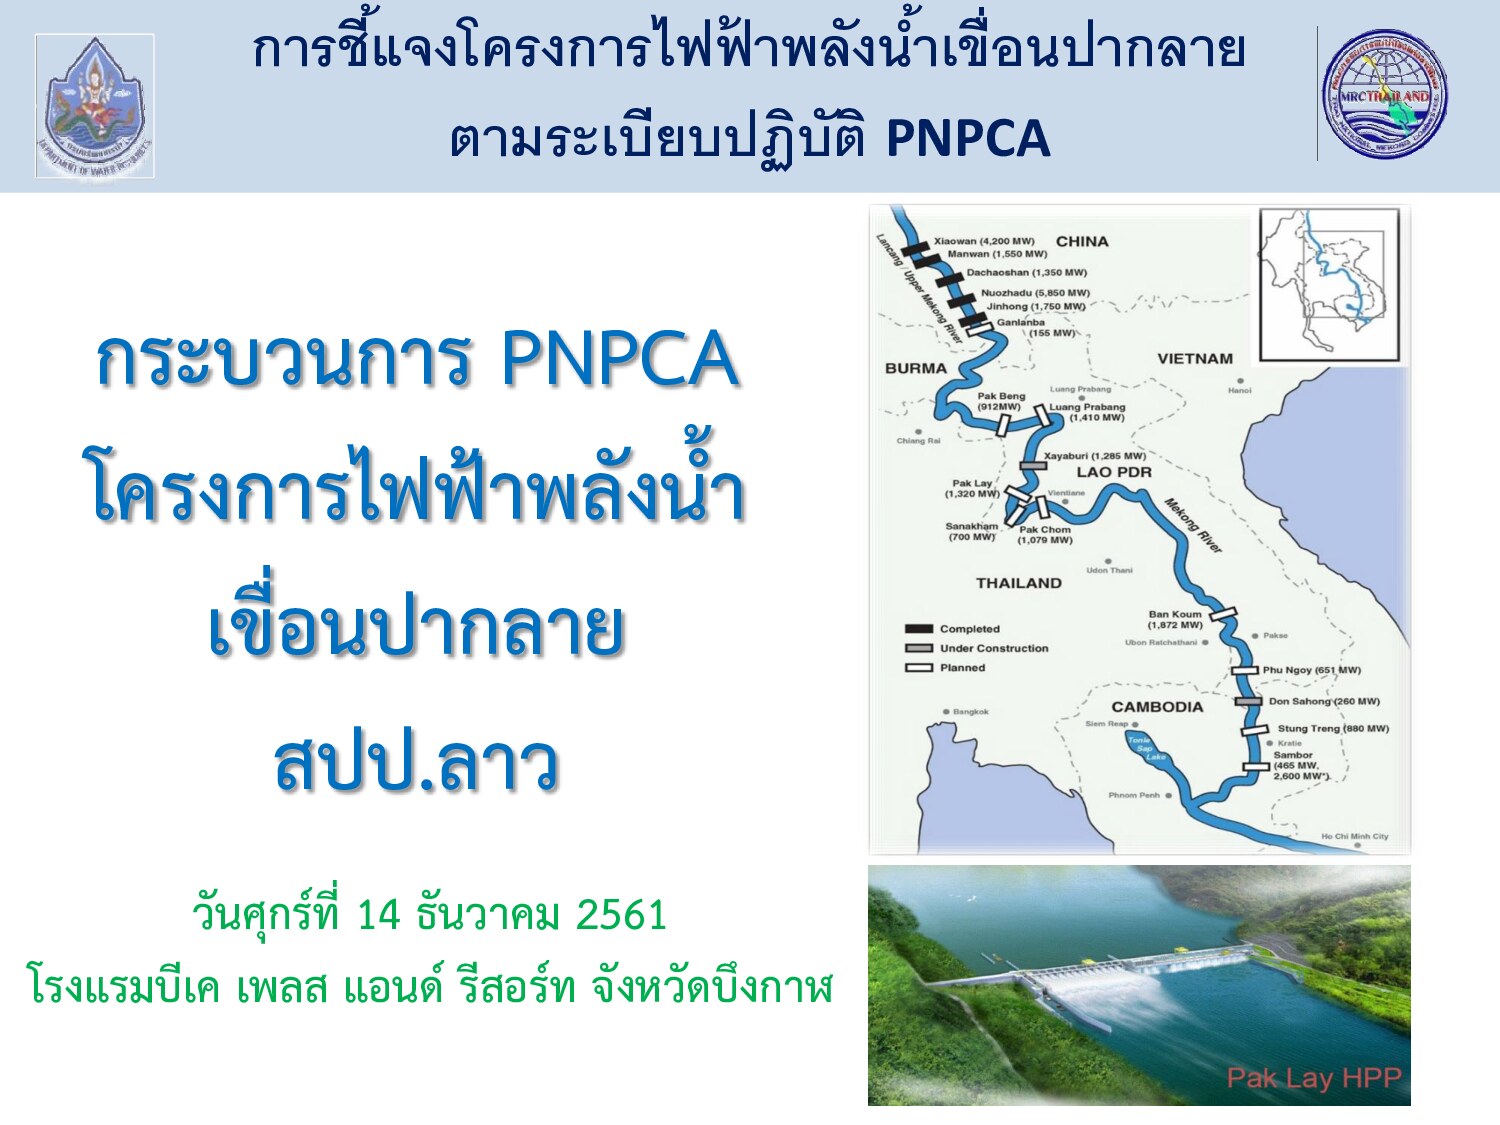 01.กระบวนการ PNPCA โครงการไฟฟ้าพลังน้้า เขื่อนปากลาย สปป.ลาว